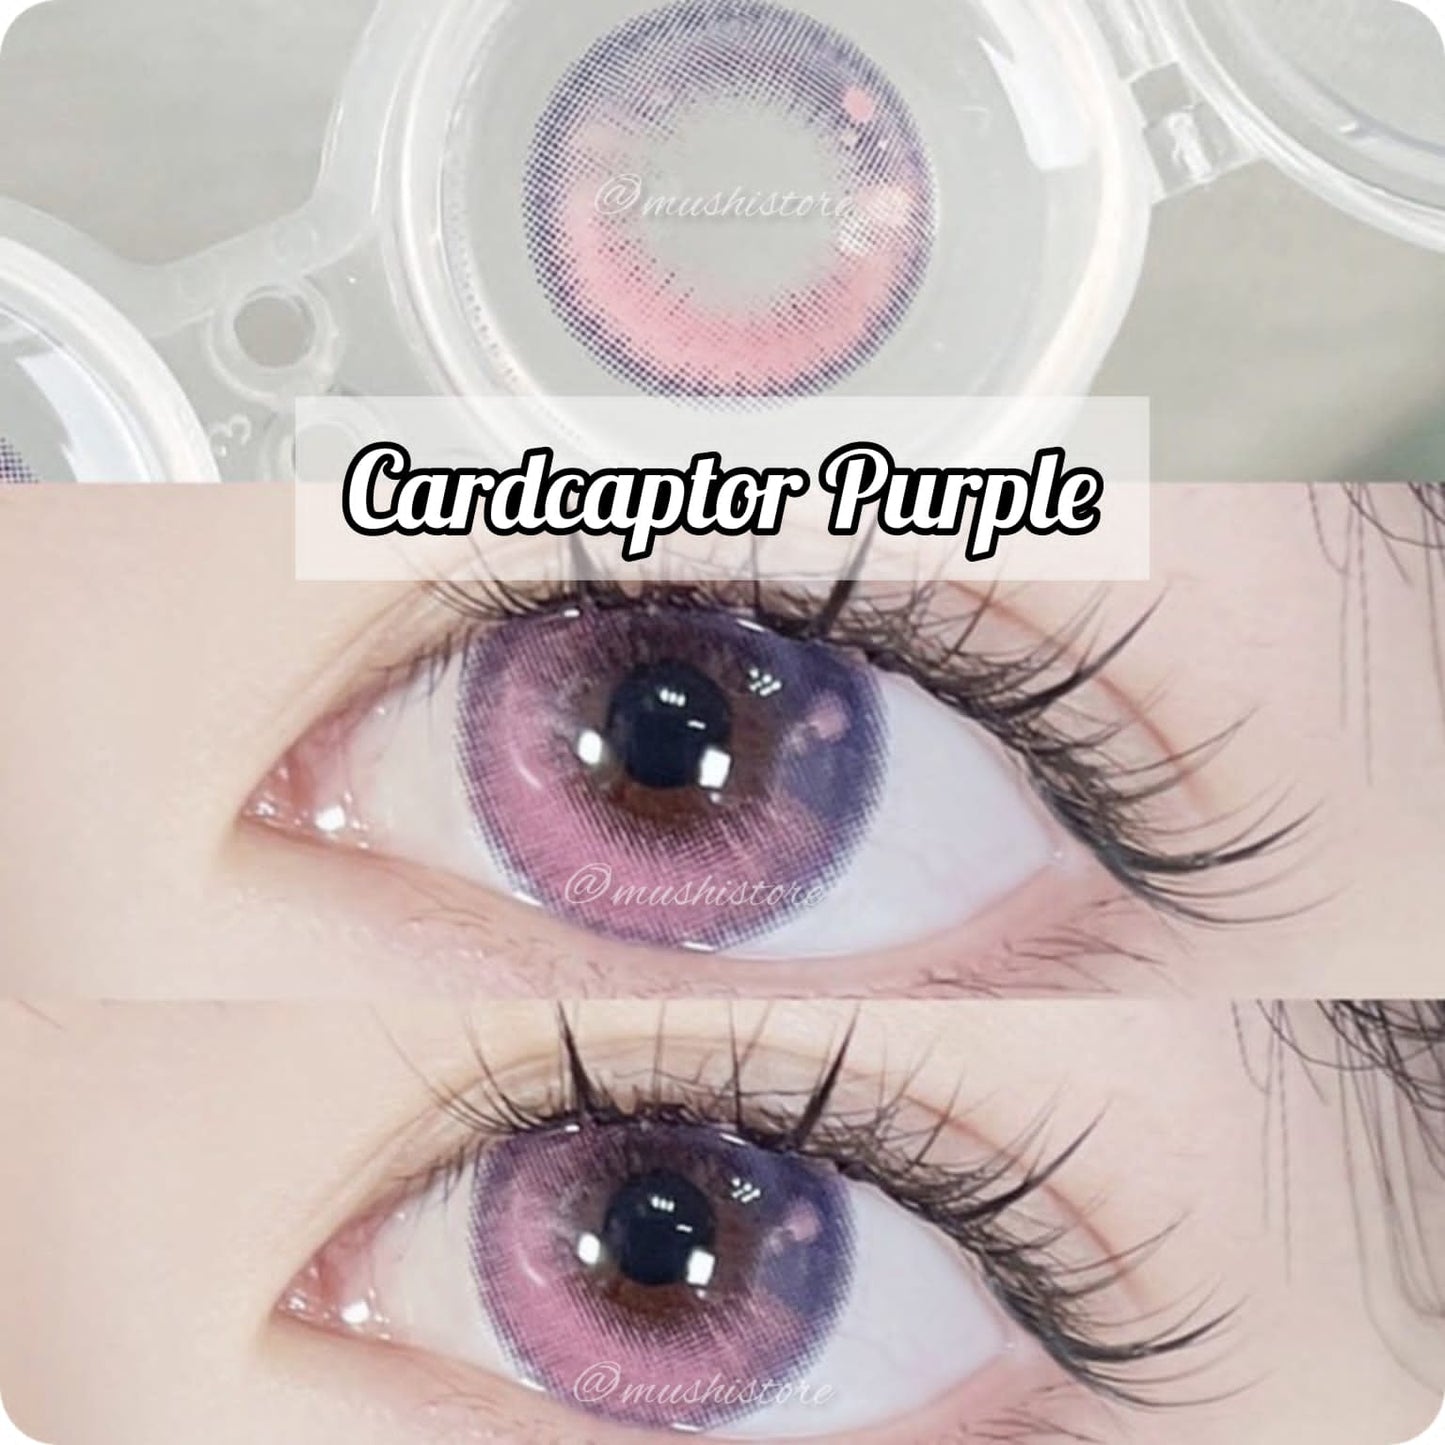 Cardcaptor Purple